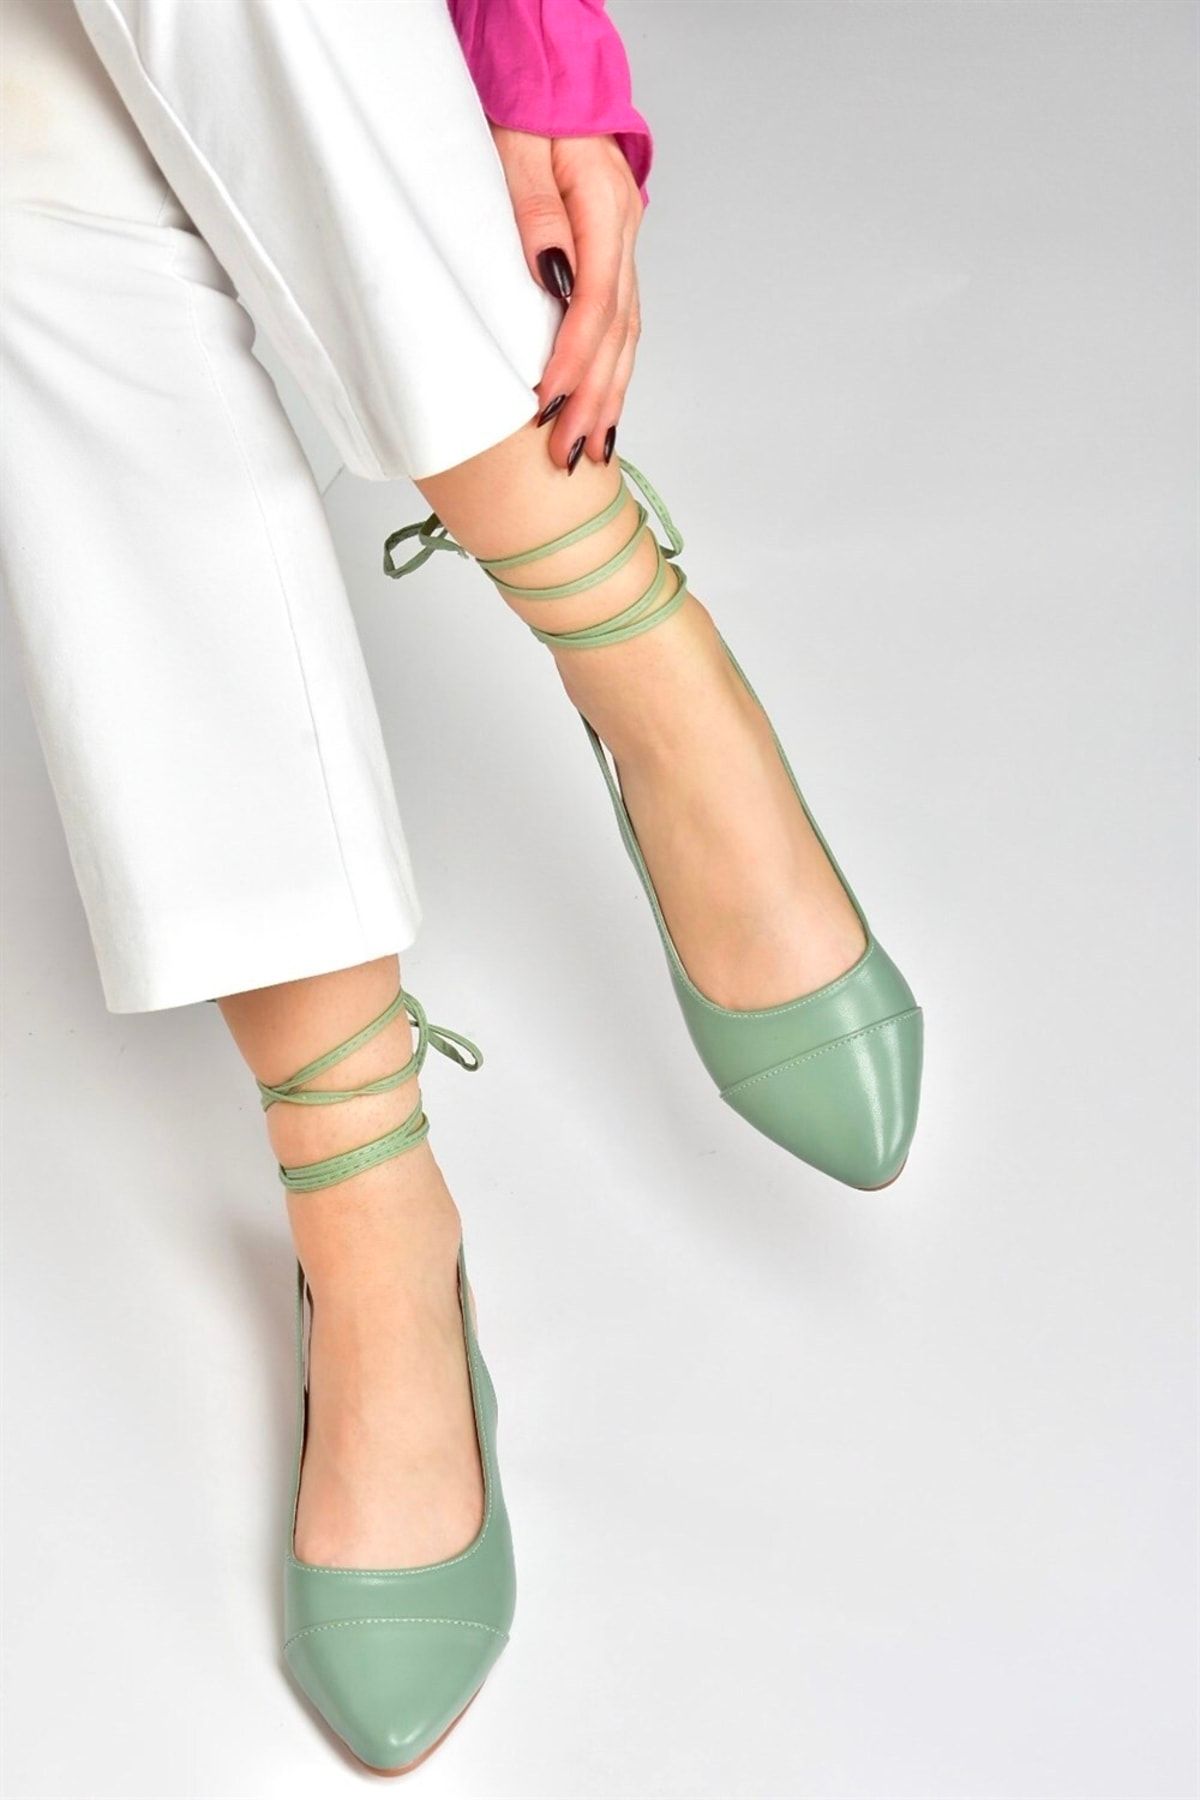 Fox Shoes Yeşil Bilek Bağlamalı Kadın Babet M726890209